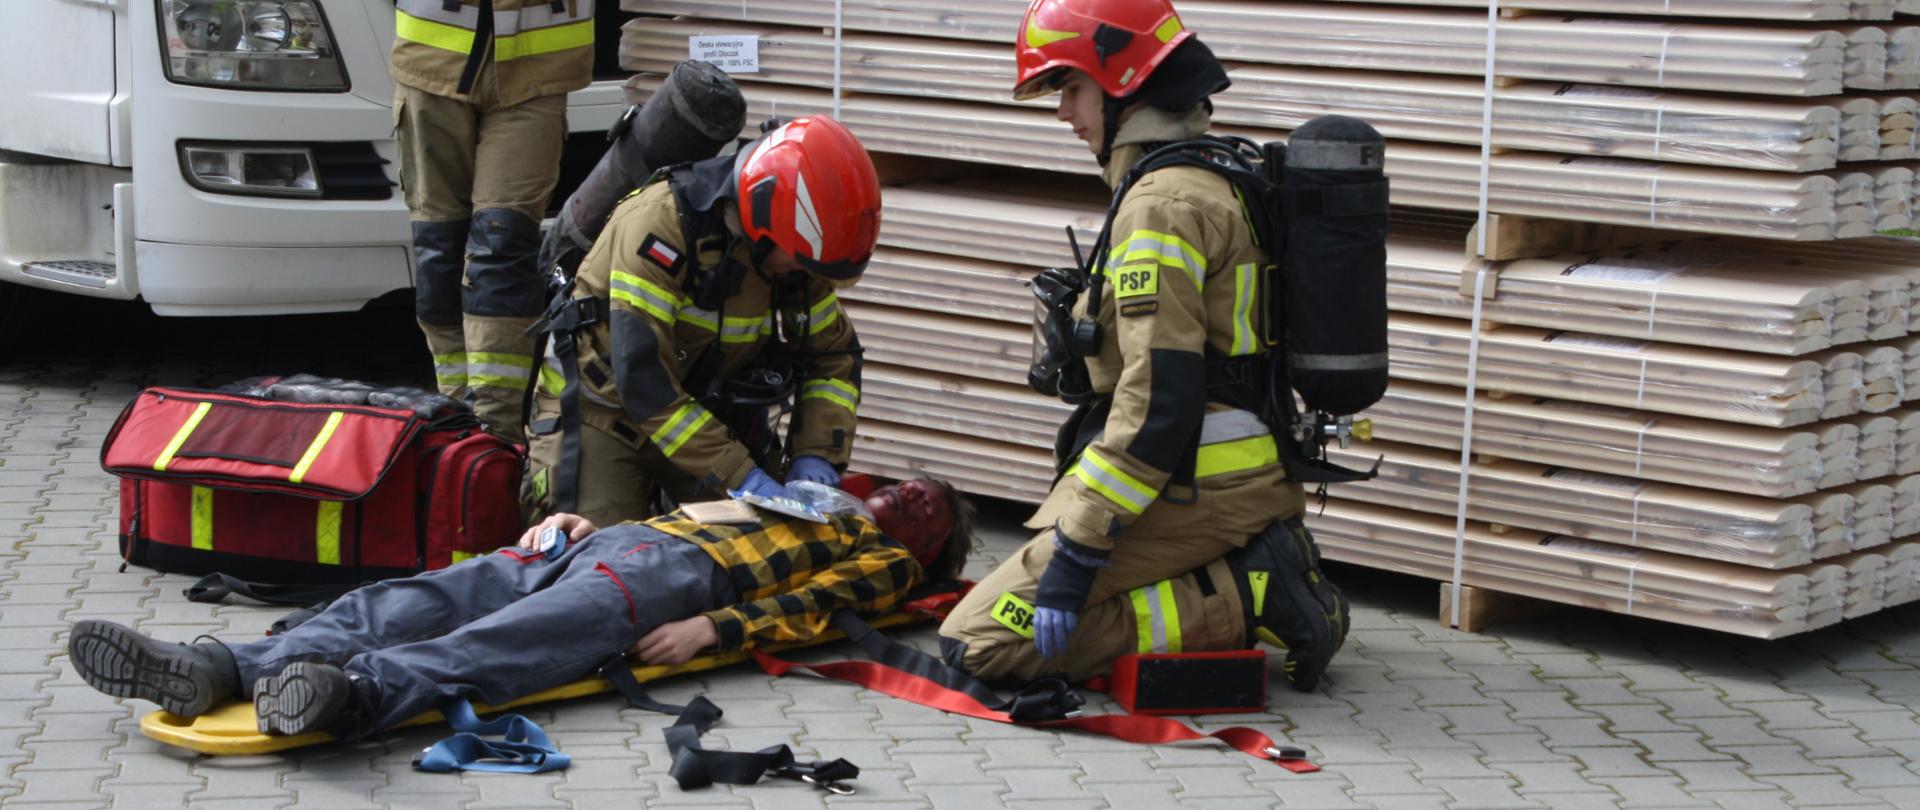 Ratownicy zaopatrujący poszkodowaną osobę na desce ratowniczej